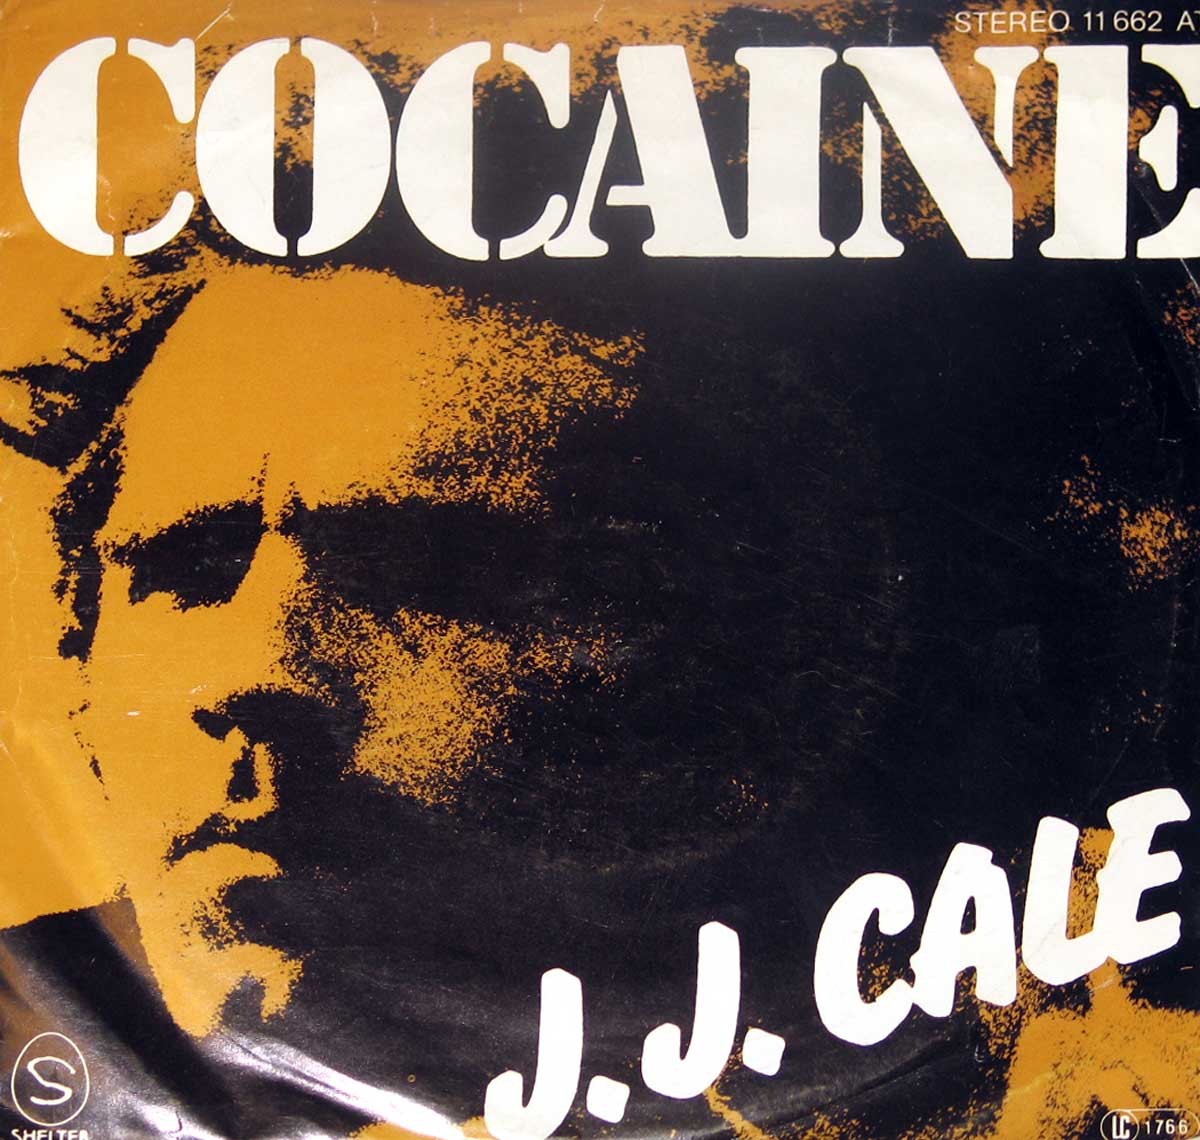  J J  Cale  Cocaine Hey Baby Vinyl  Album Cover Gallery 